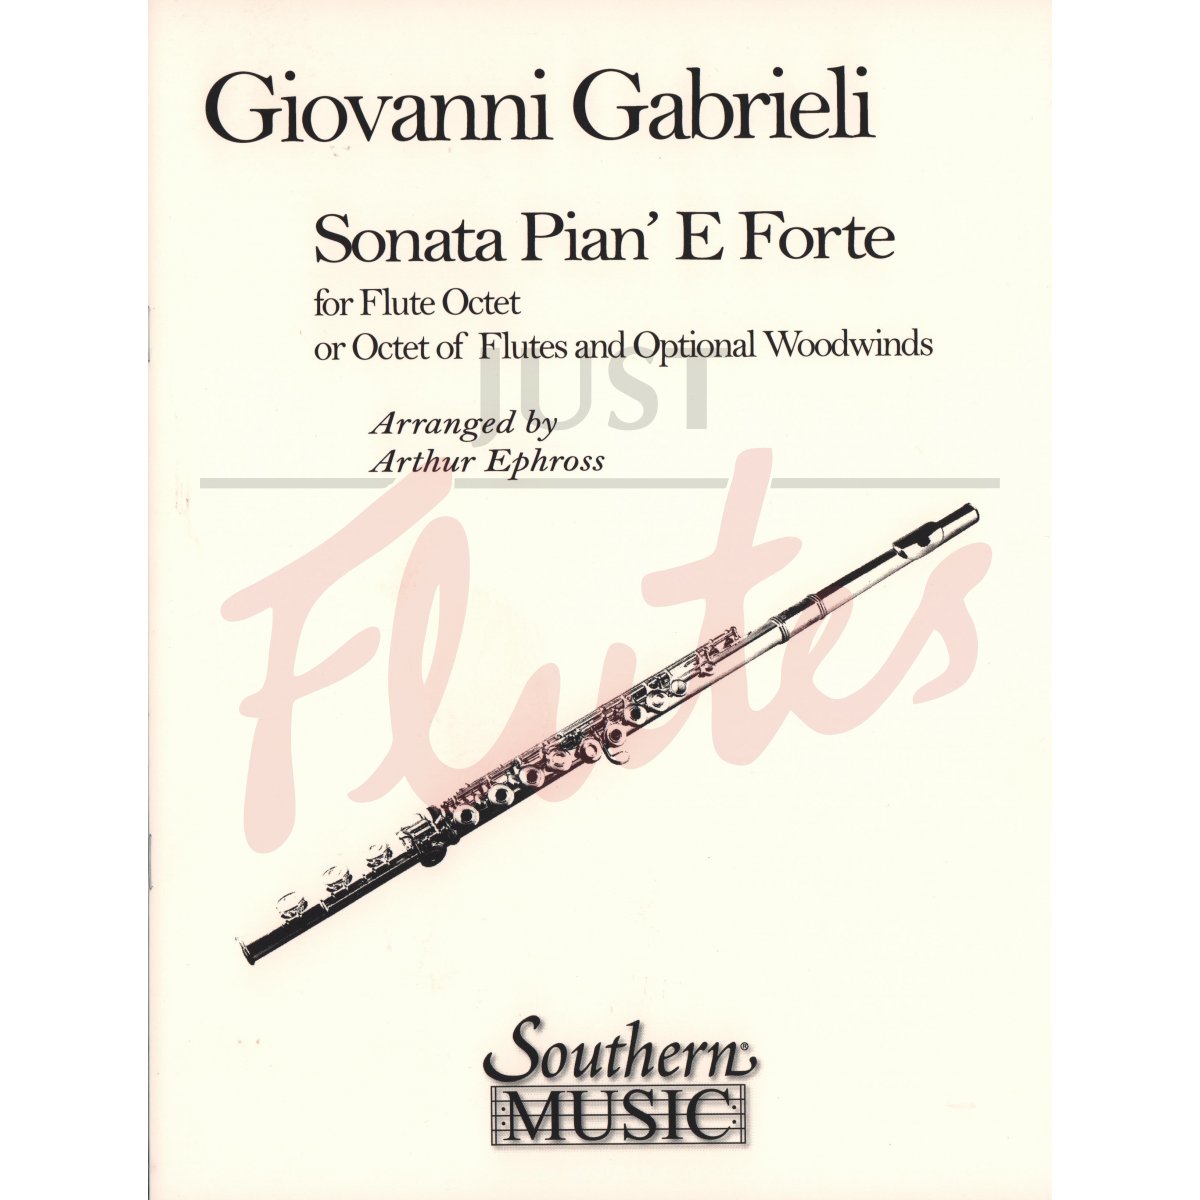 Sonata Pian' e Forte